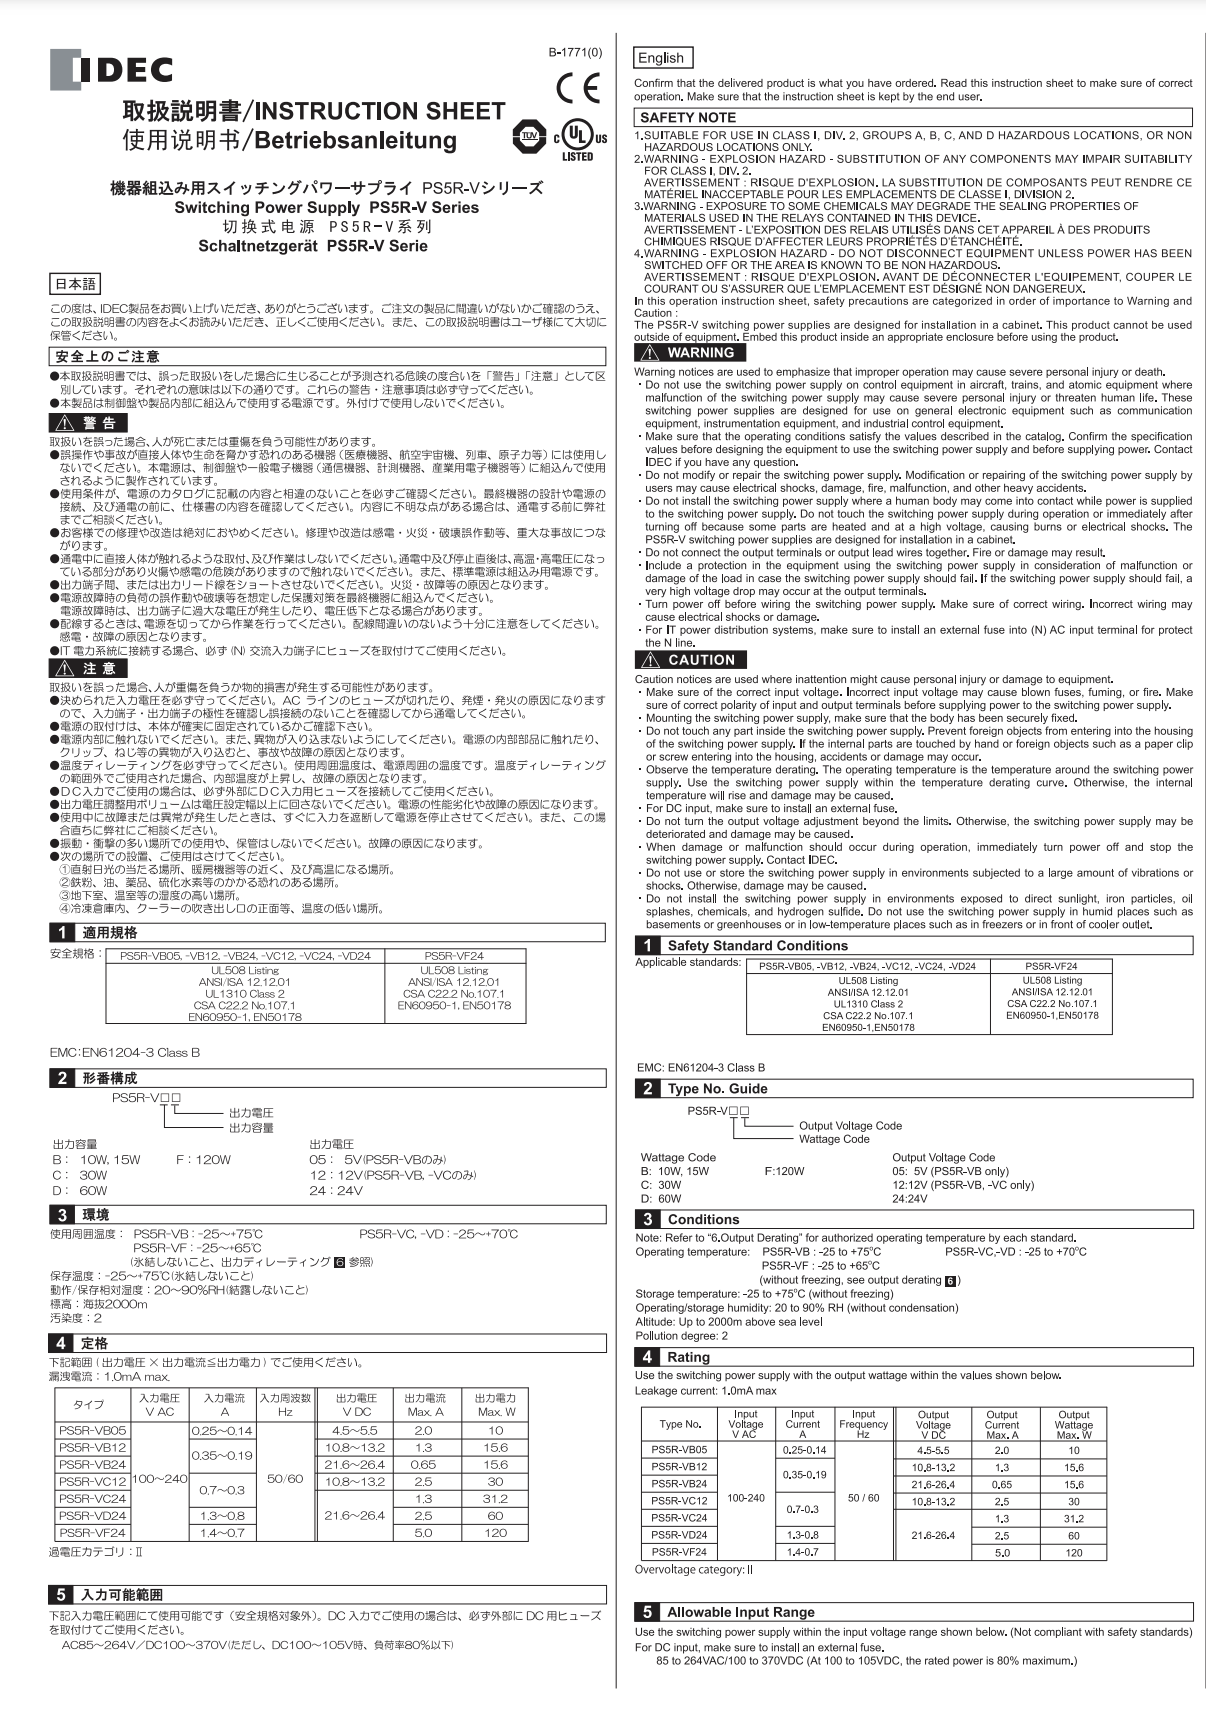 IDEC PS5R-V Instruction Sheet